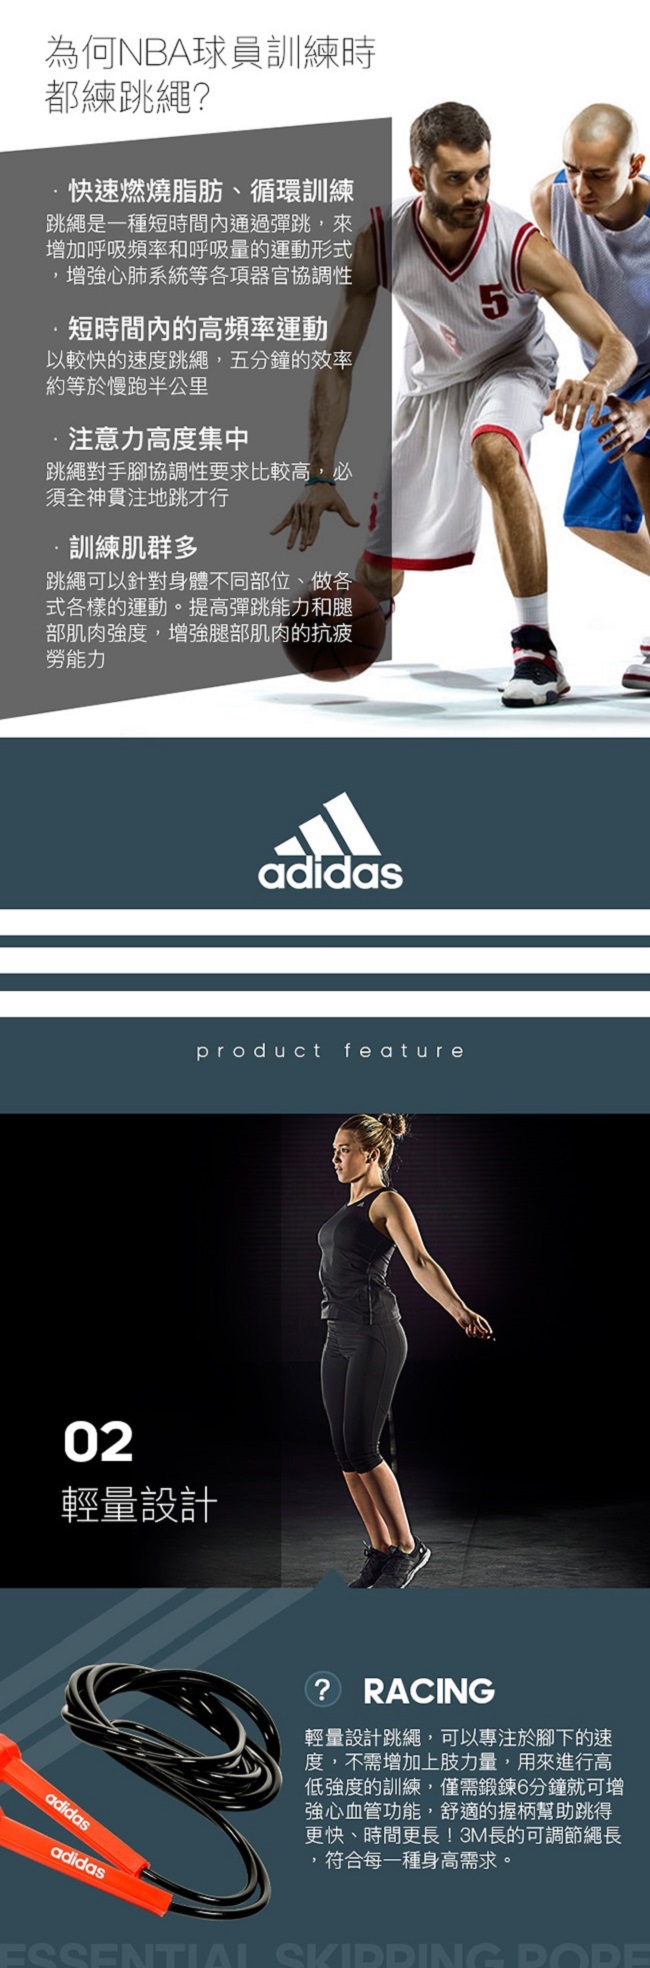 Adidas 重訓二件組(啞鈴1kg+基礎訓練型跳繩)